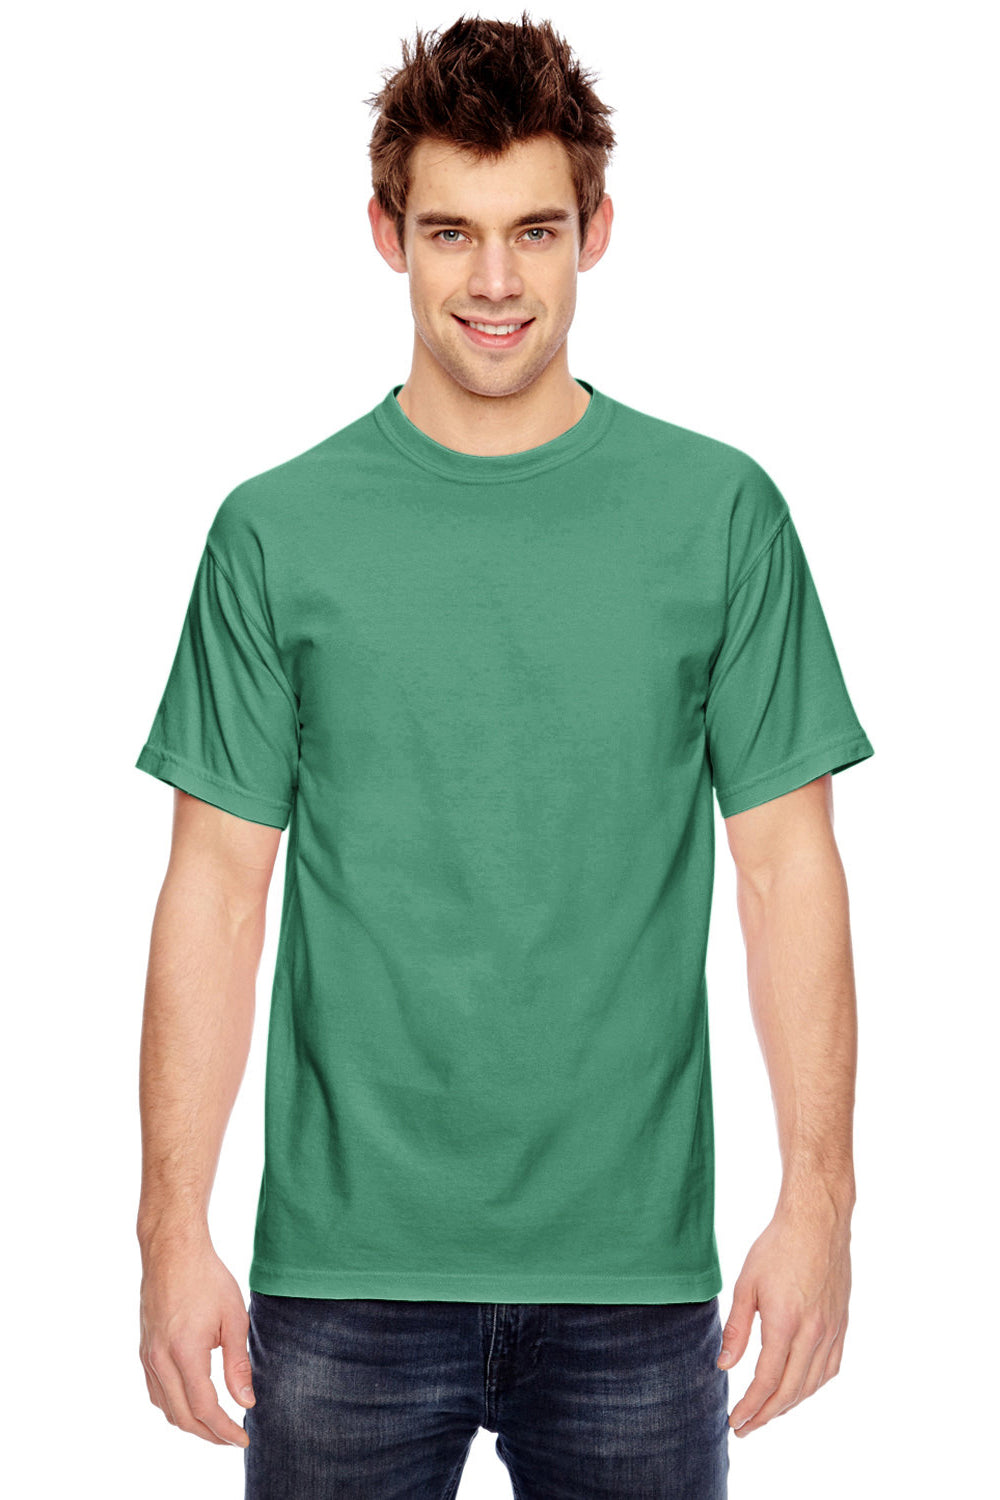 Comfort Colors 1717/C1717 Mens Short Sleeve Crewneck T-Shirt Island Green Front